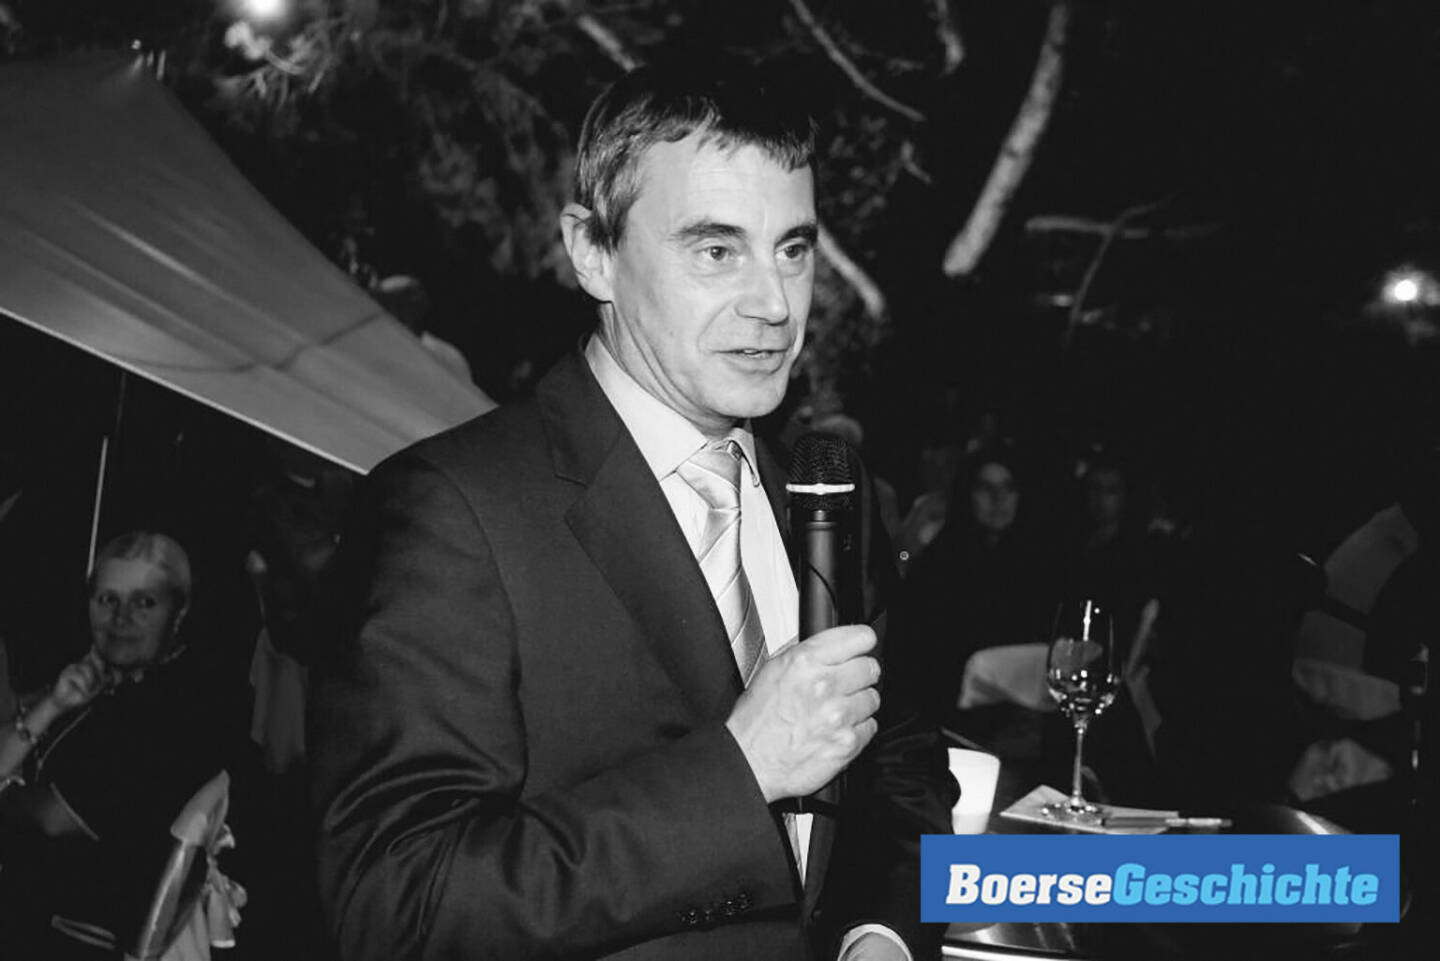 #boersegeschichte: Börsechef Heinrich Schaller beim Barrique de Beurse 2010